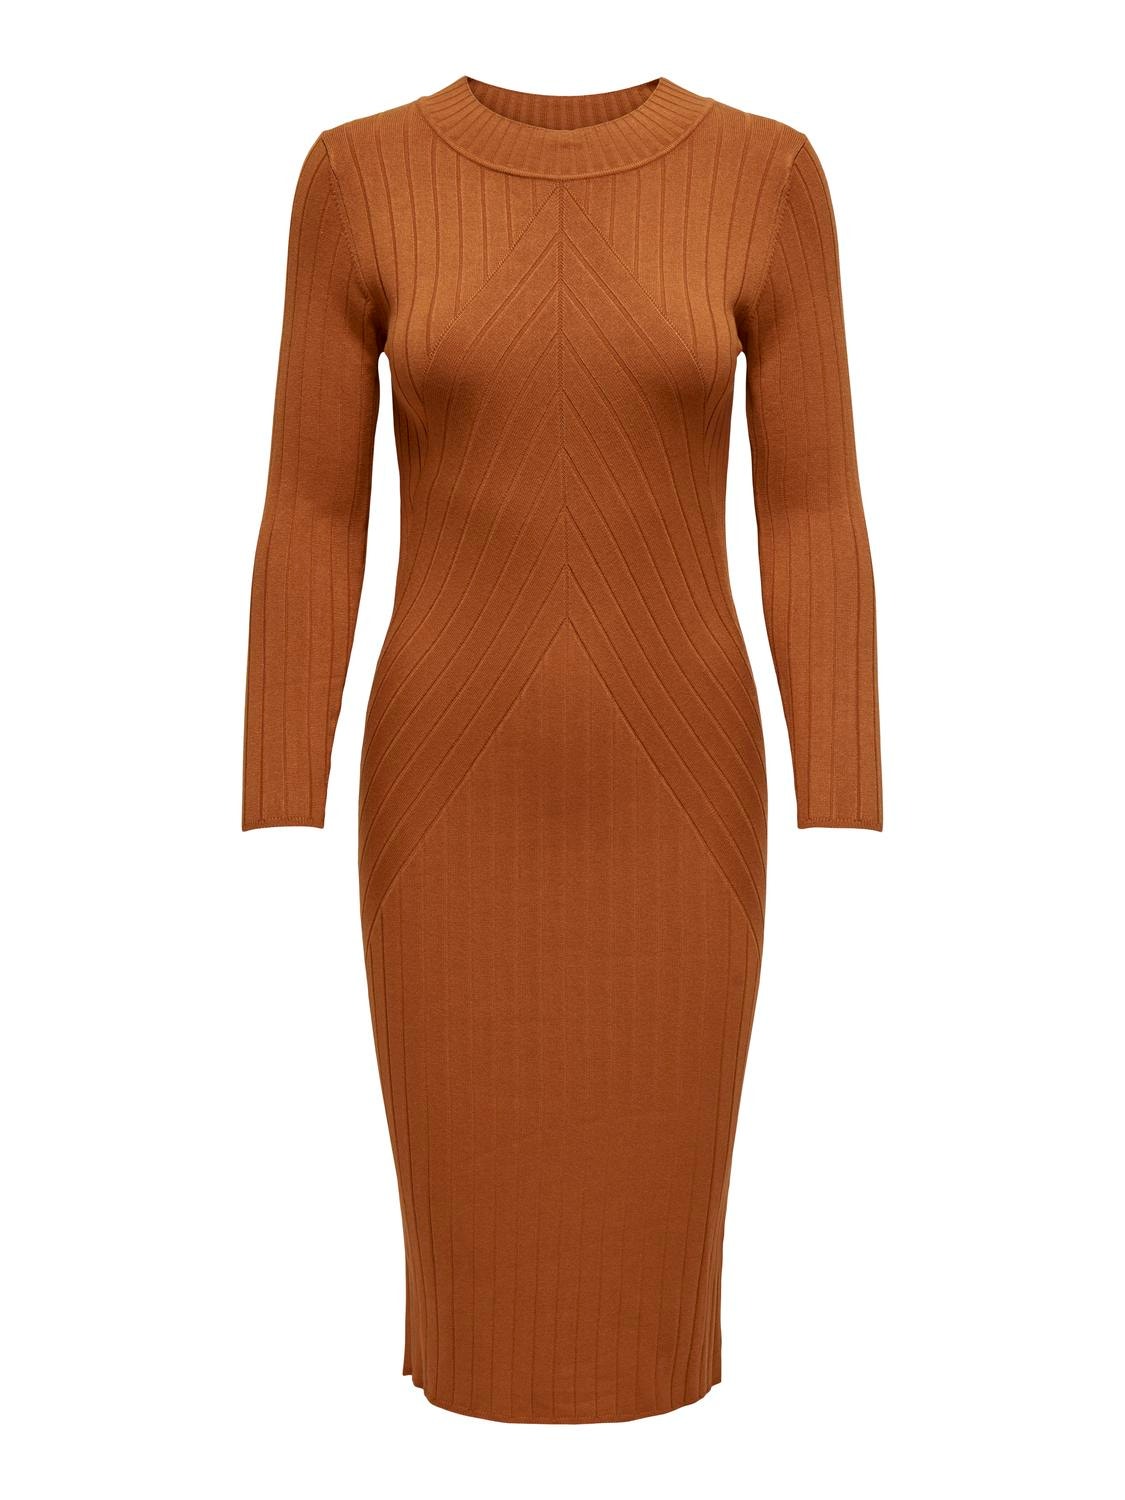 ONLY Nauwsluitende Gebreide jurk -Leather Brown - 15207693